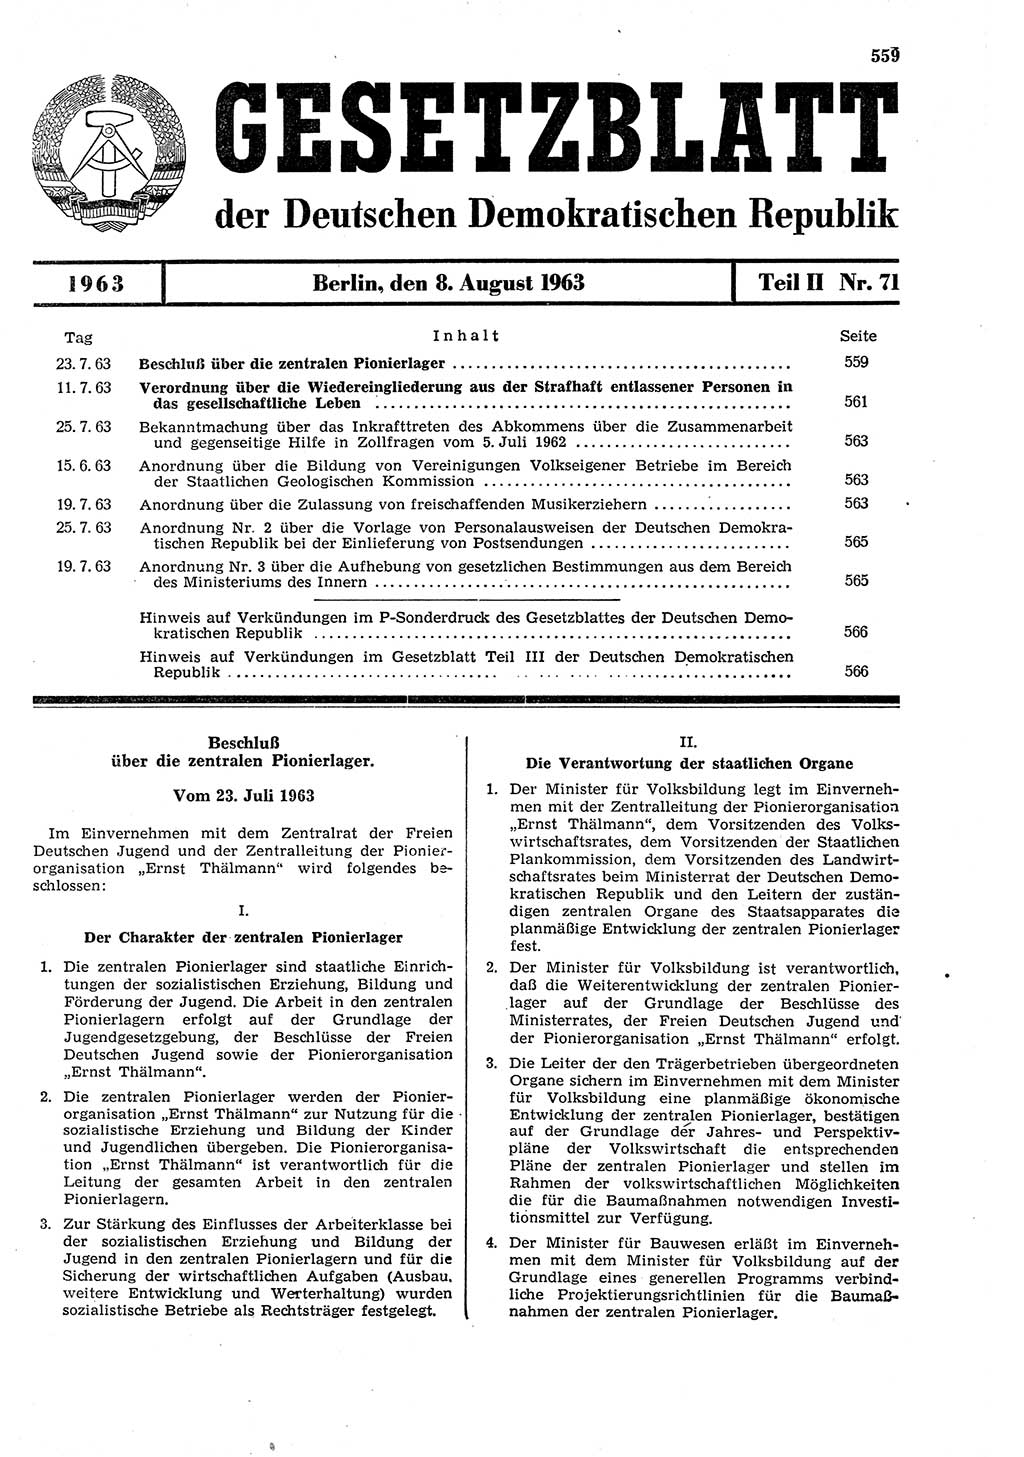 Gesetzblatt (GBl.) der Deutschen Demokratischen Republik (DDR) Teil ⅠⅠ 1963, Seite 559 (GBl. DDR ⅠⅠ 1963, S. 559)